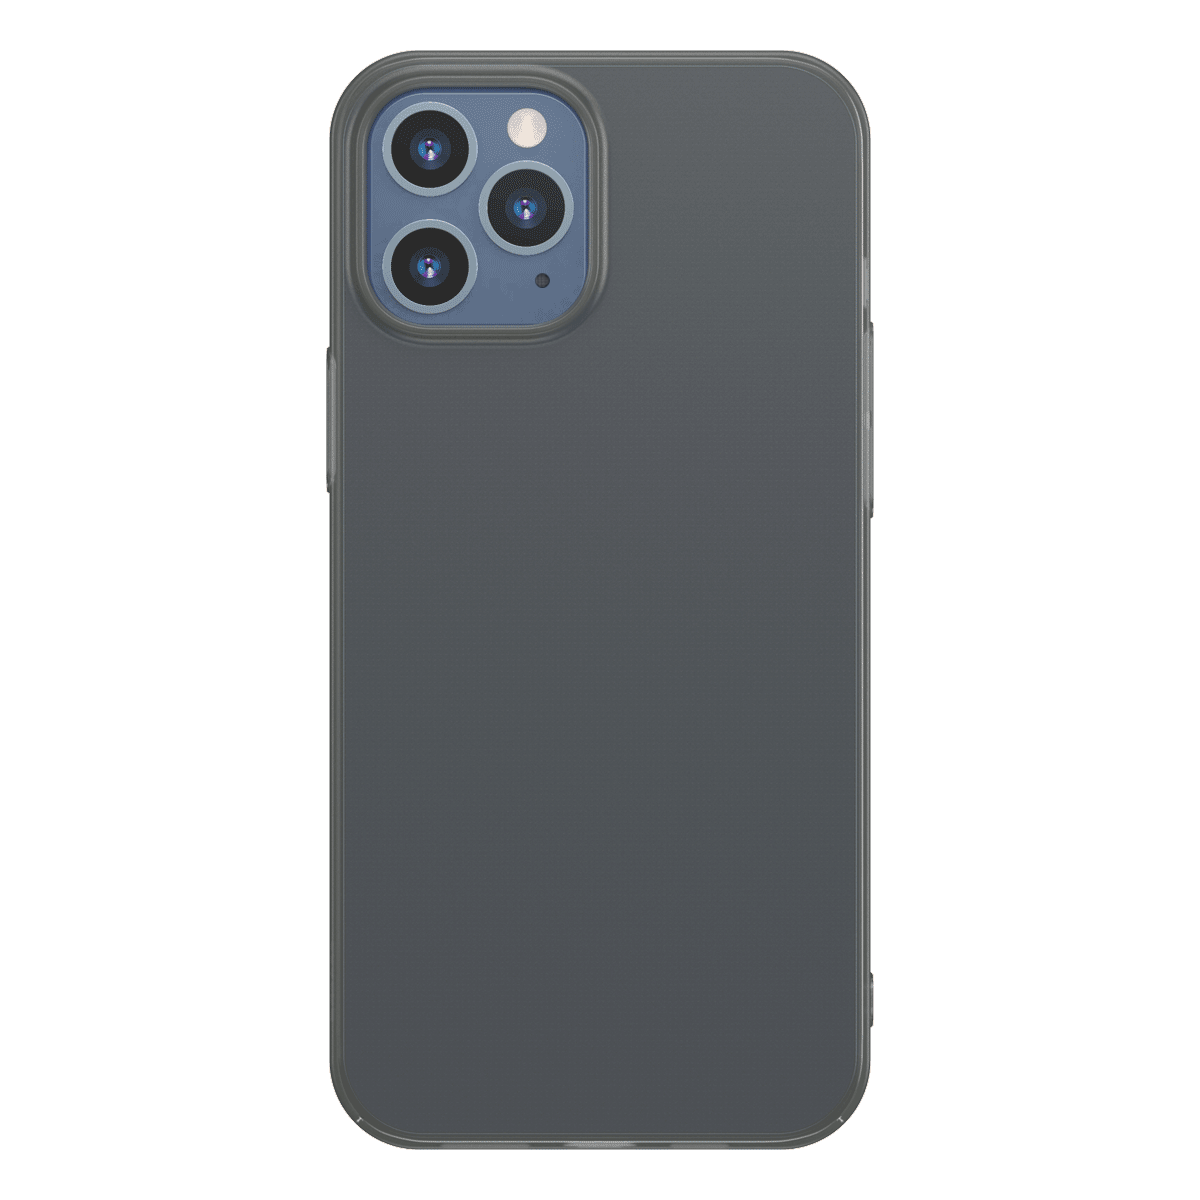 Husa Apple iPhone 12 / 12 Pro, Baseus Comfort Case, Negru, 6.1 inch imagine